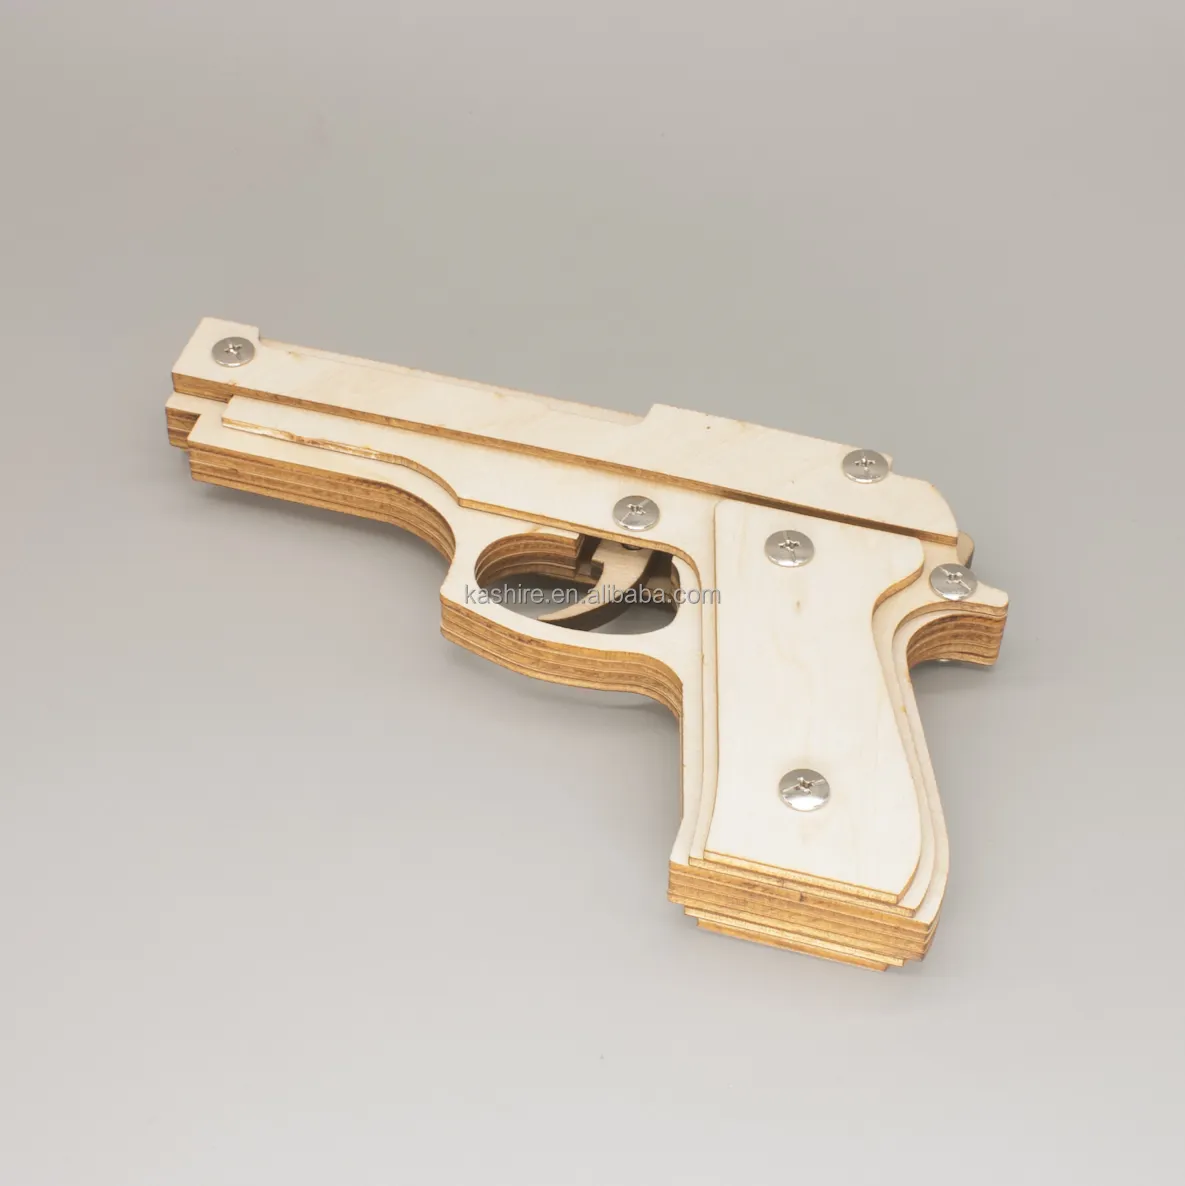 Pistolet jouet en bois découpé au laser 3D, 1 pièce, bande de caoutchouc, modèle de bricolage